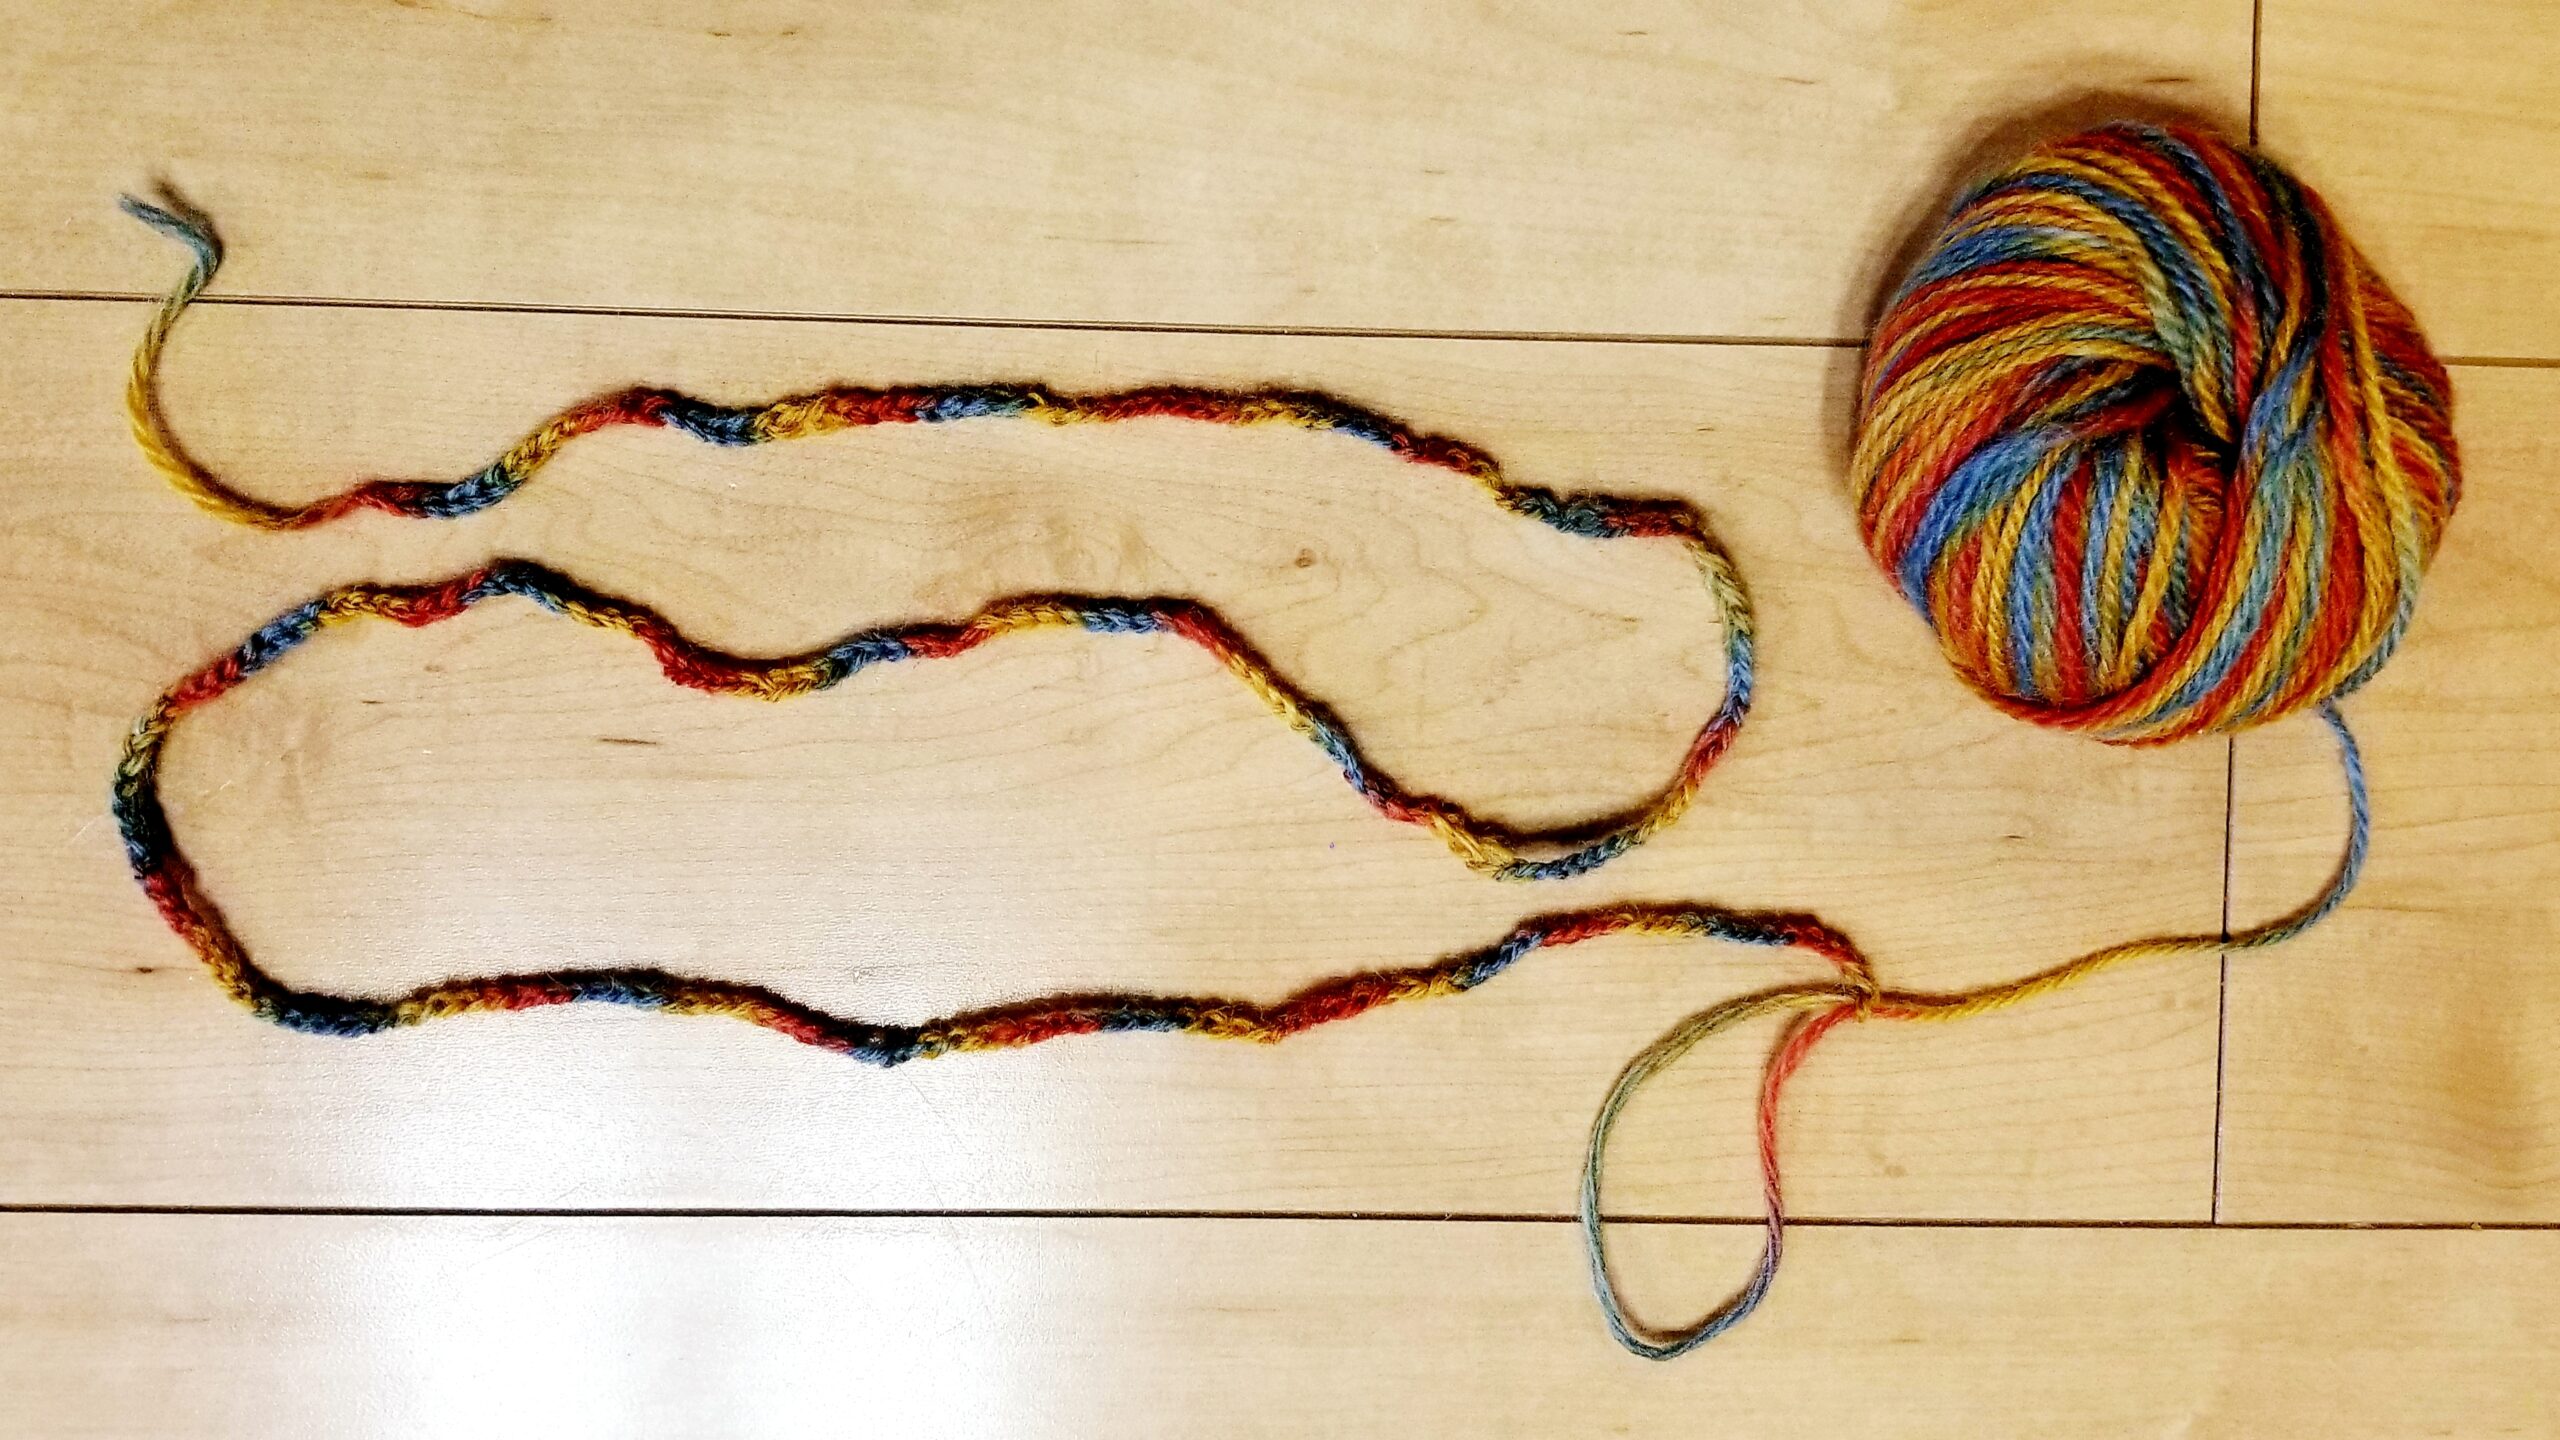 あやとり紐の作り方 指編みで簡単に結び目の目立たないあやとり紐を作ろう 三児ママの楽しい子育てdiy